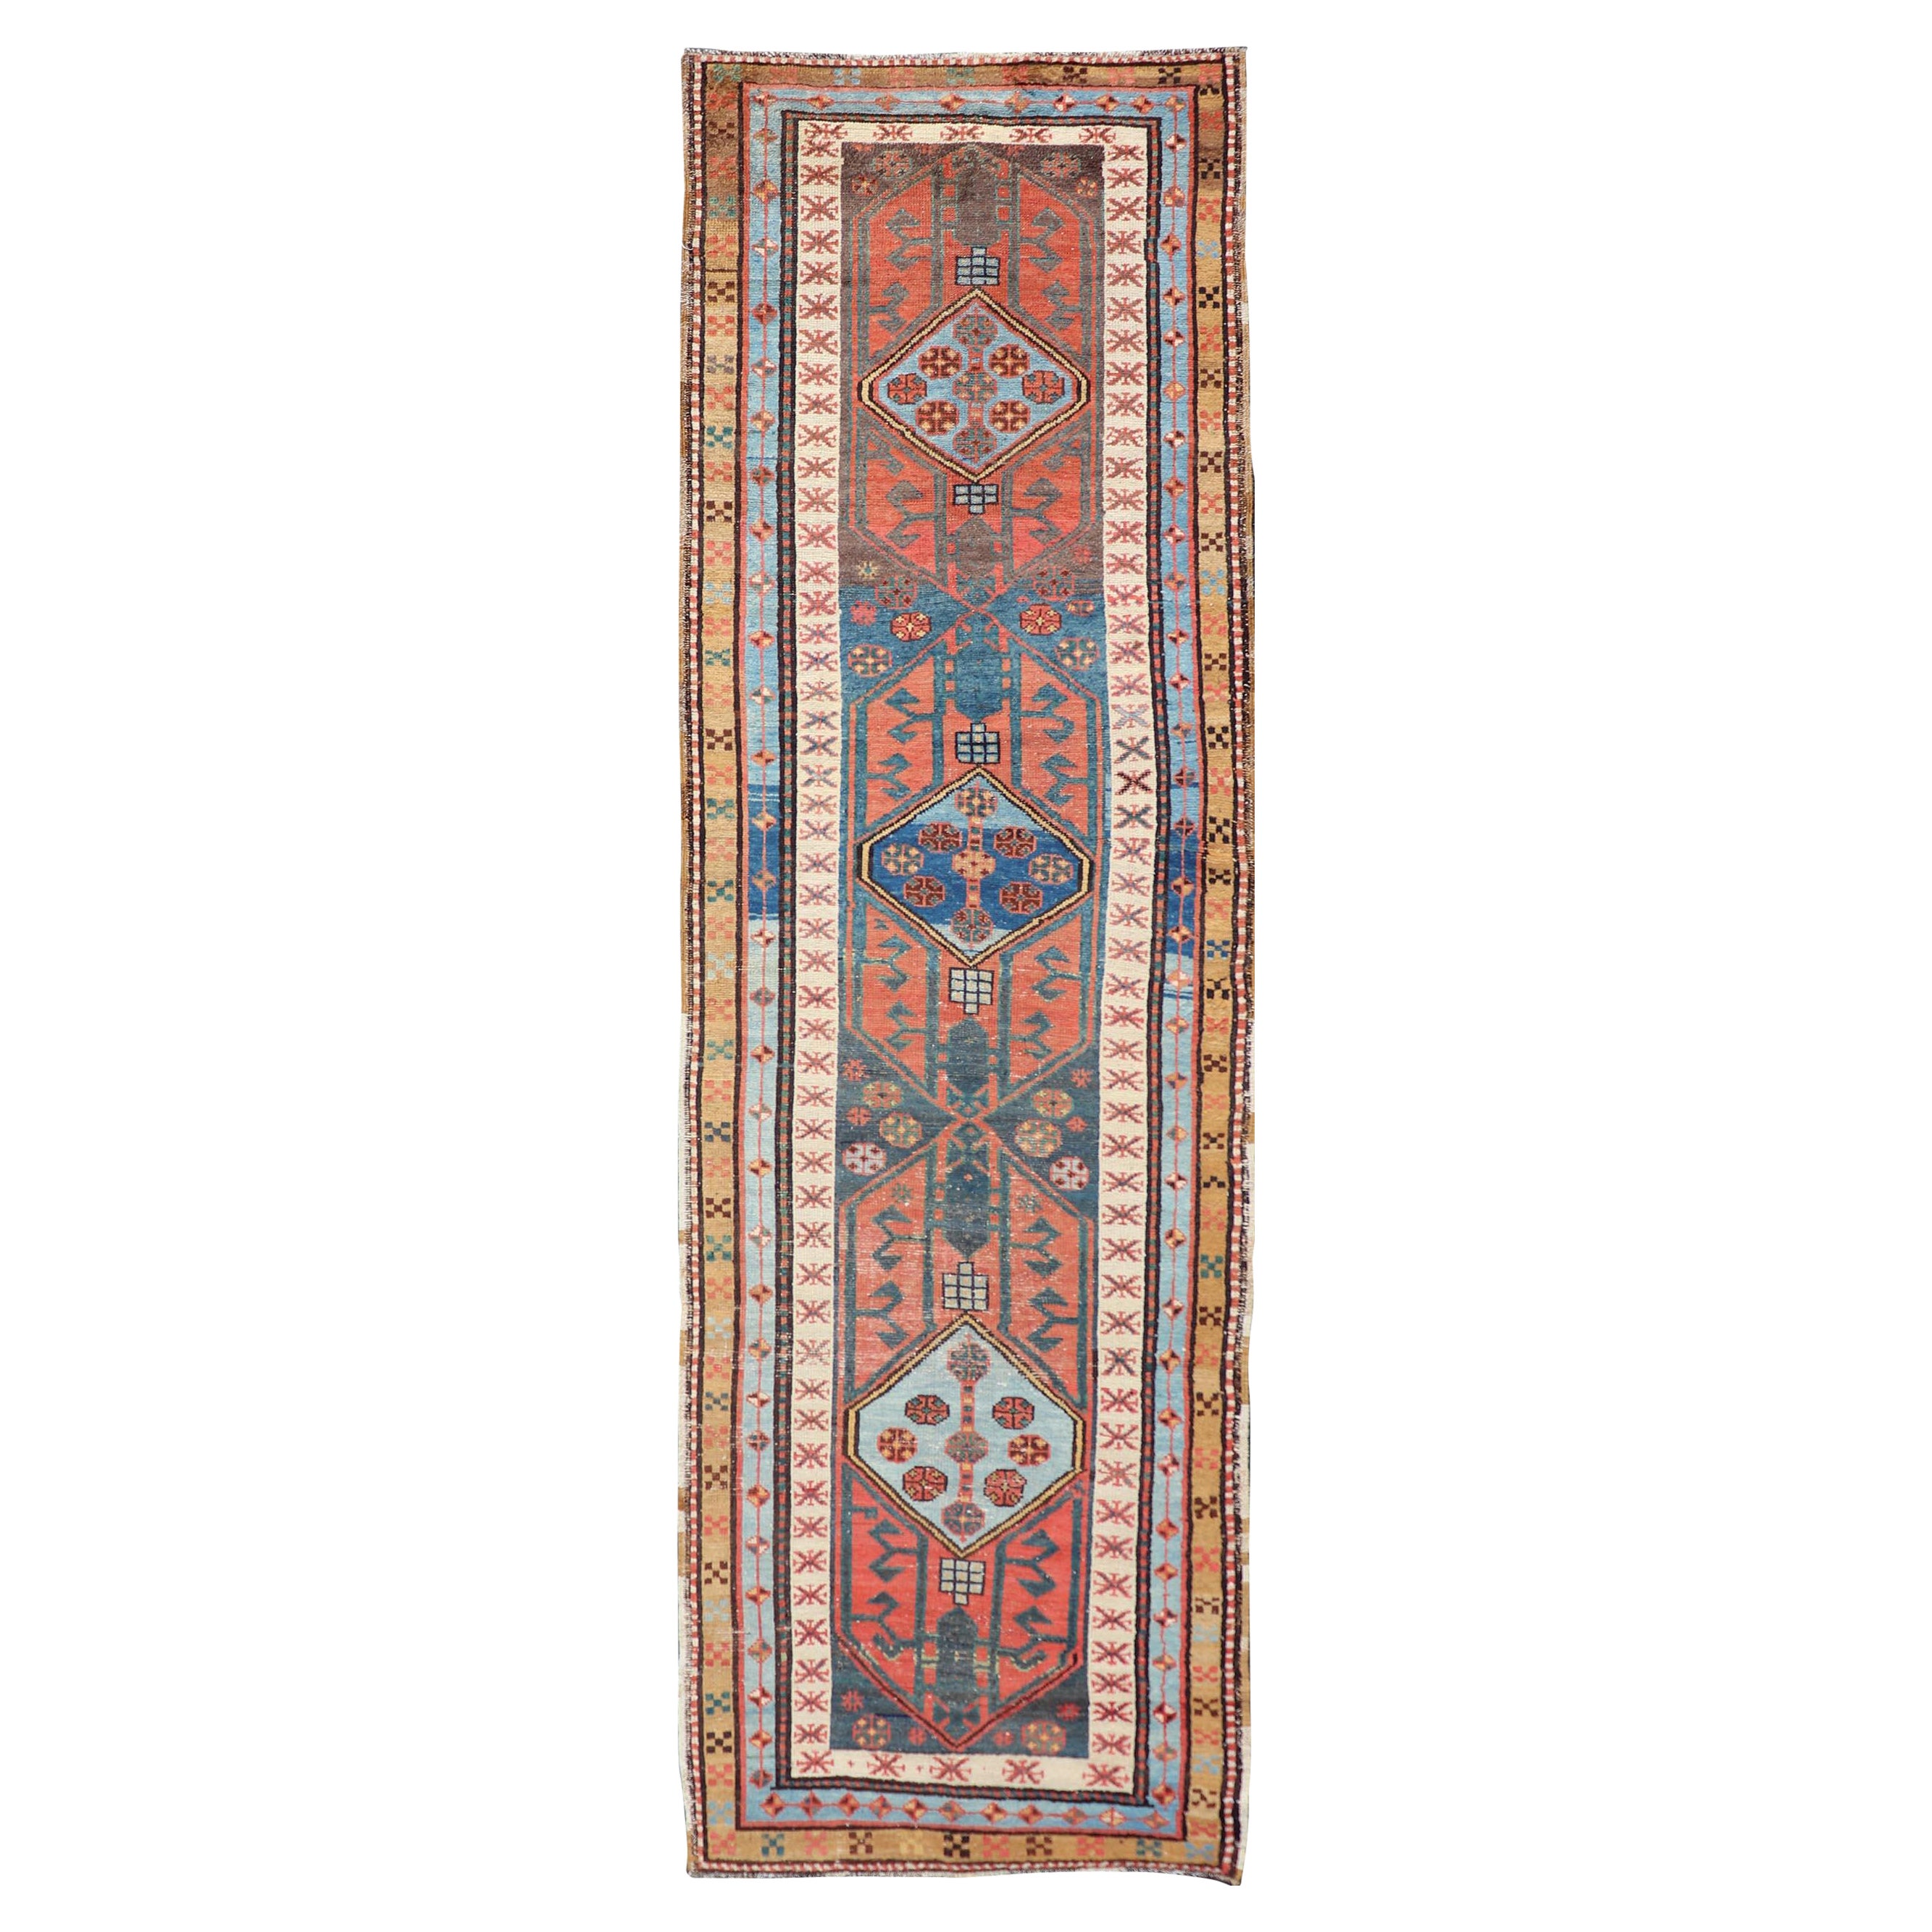 Tapis de couloir persan ancien coloré Heriz-Serapi au design géométrique audacieux